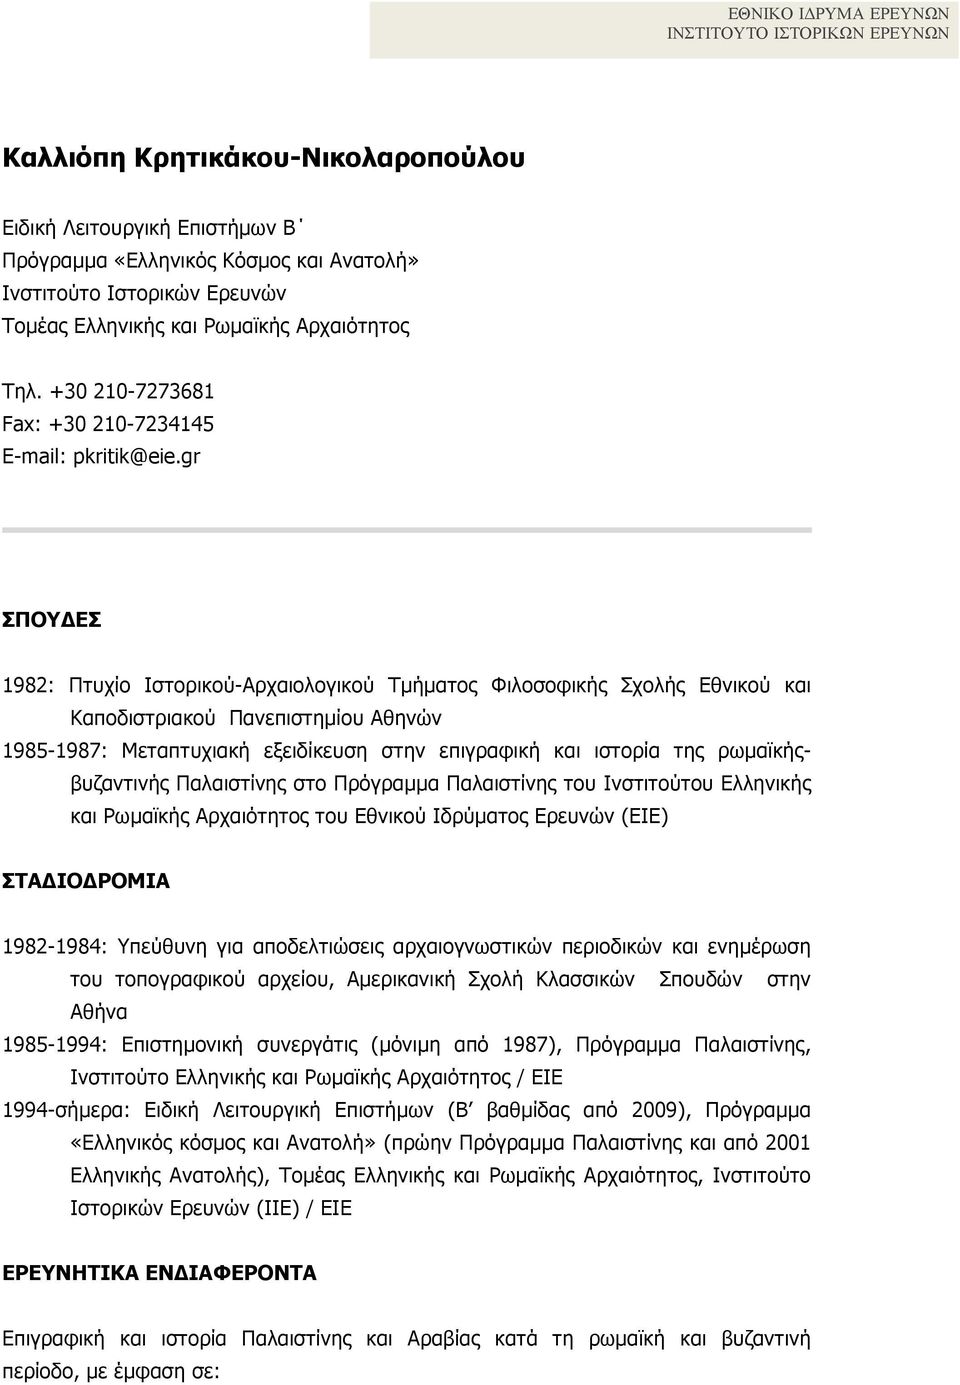 gr ΣΠΟΥΔΕΣ 1982: Πτυχίο Ιστορικού-Αρχαιολογικού Τµήµατος Φιλοσοφικής Σχολής Εθνικού και Καποδιστριακού Πανεπιστηµίου Αθηνών 1985-1987: Μεταπτυχιακή εξειδίκευση στην επιγραφική και ιστορία της